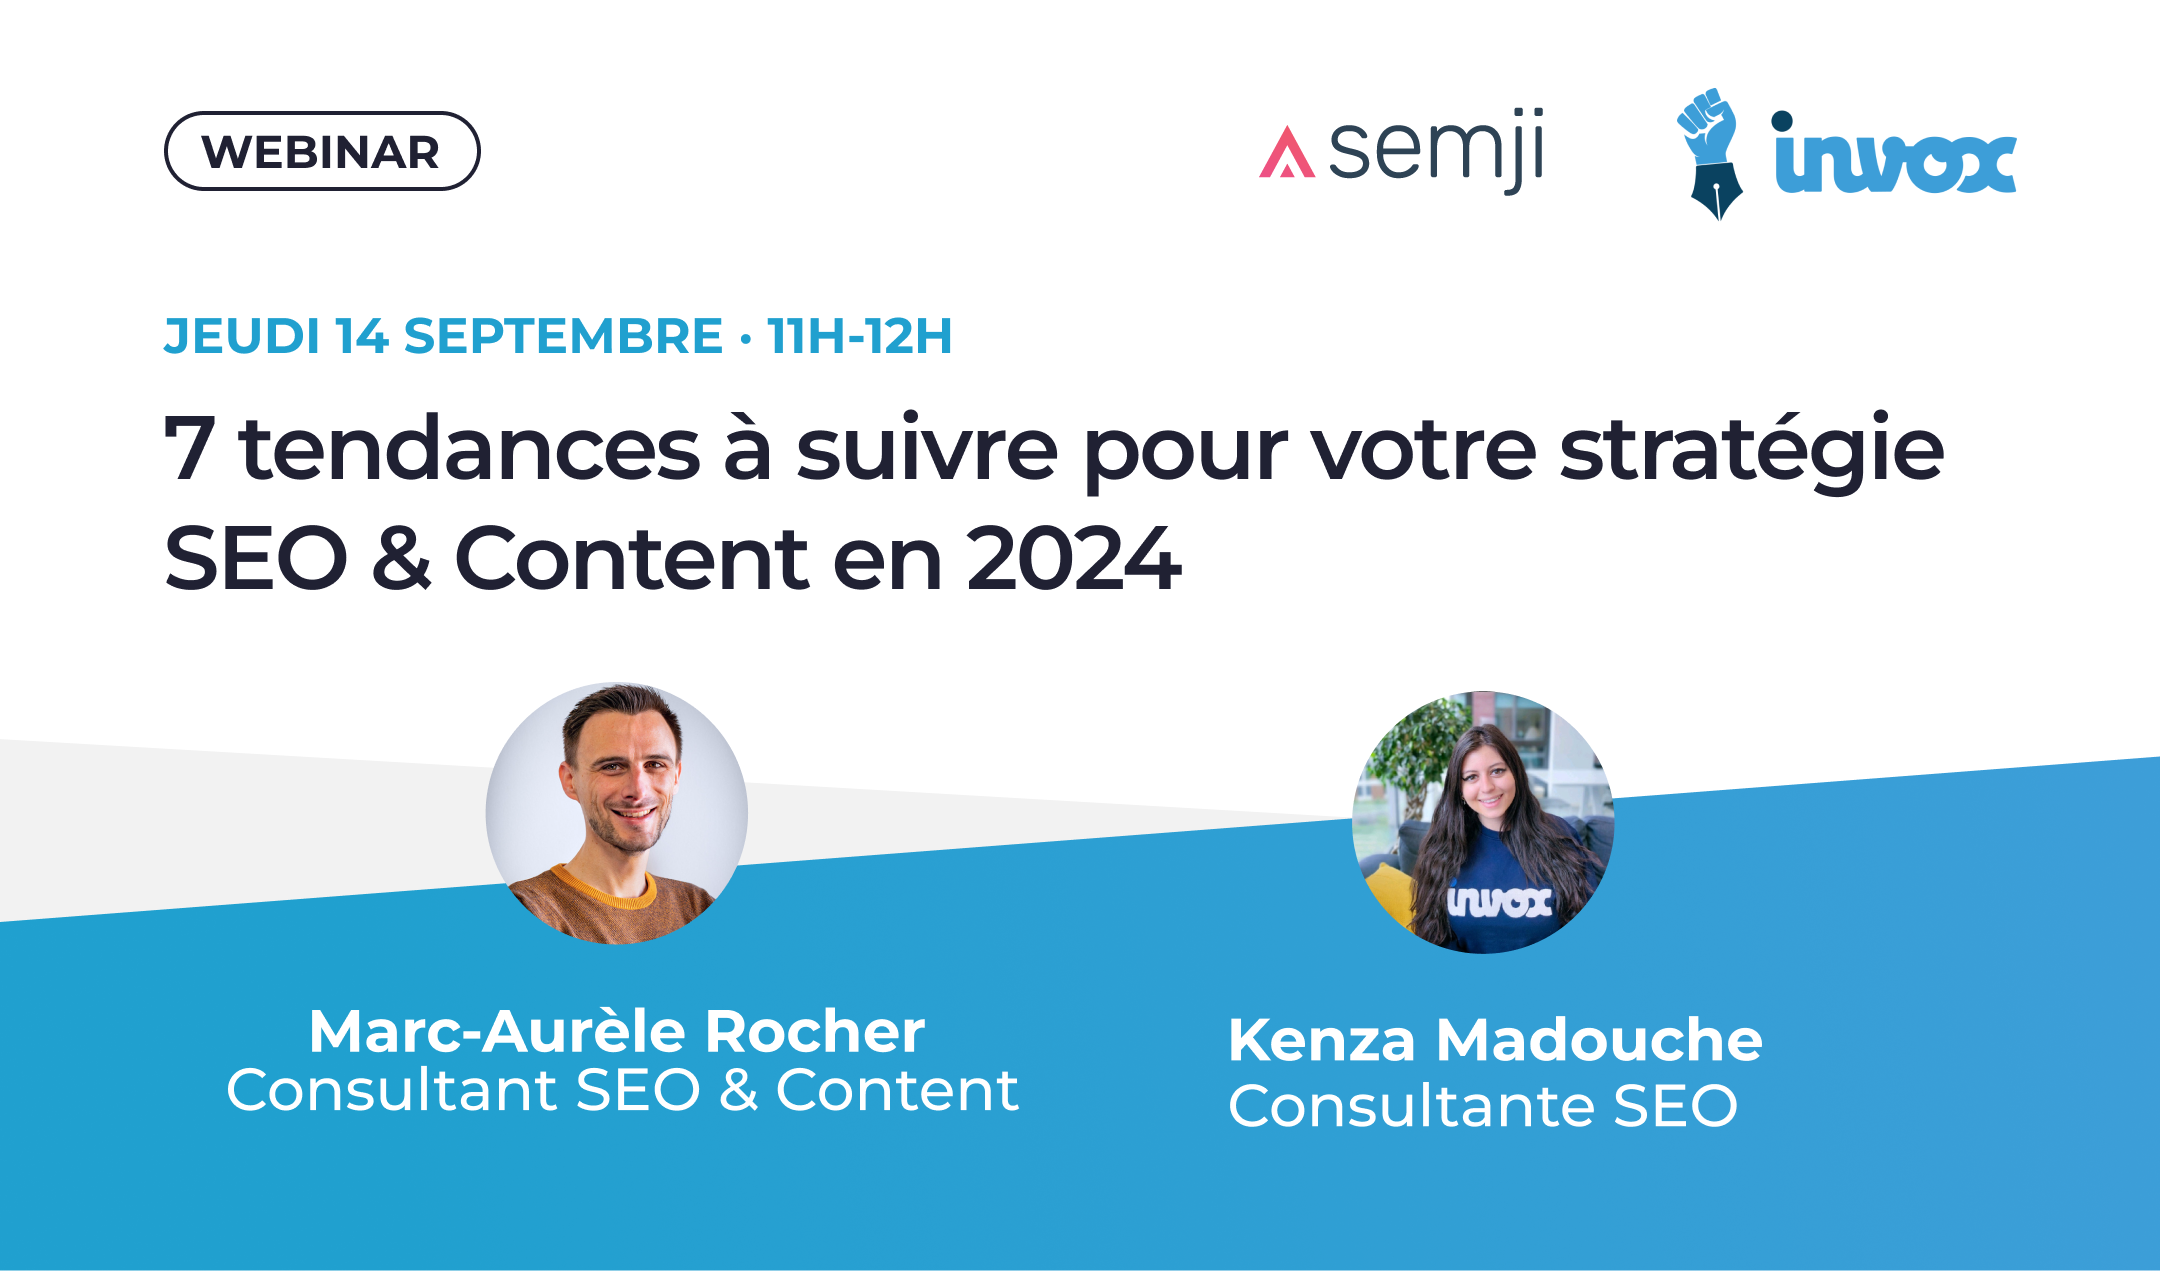 Agenda : Le 14 Septembre 2023, Semji organise un Webinaire "7 tendances à suivre pour votre stratégie SEO & Content en 2024"